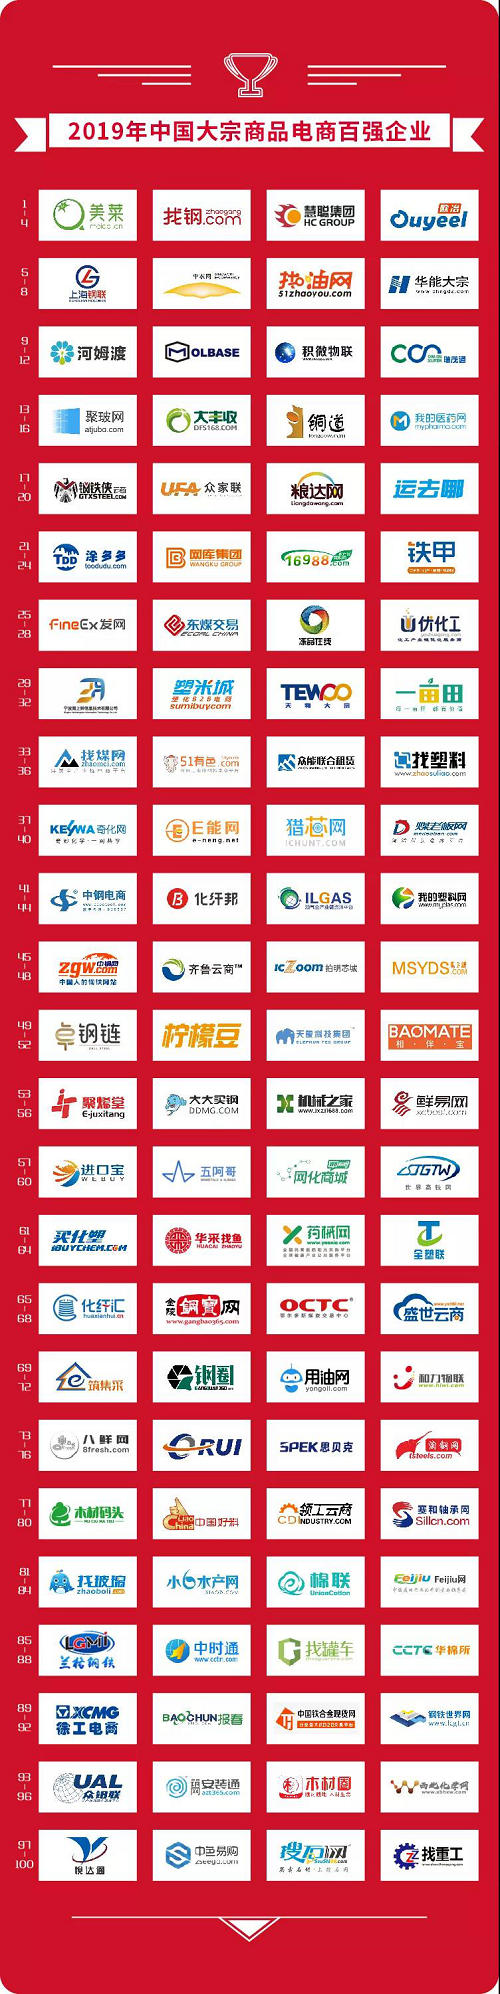 找钢网获评 “2019中国大宗商品电商百强企业”